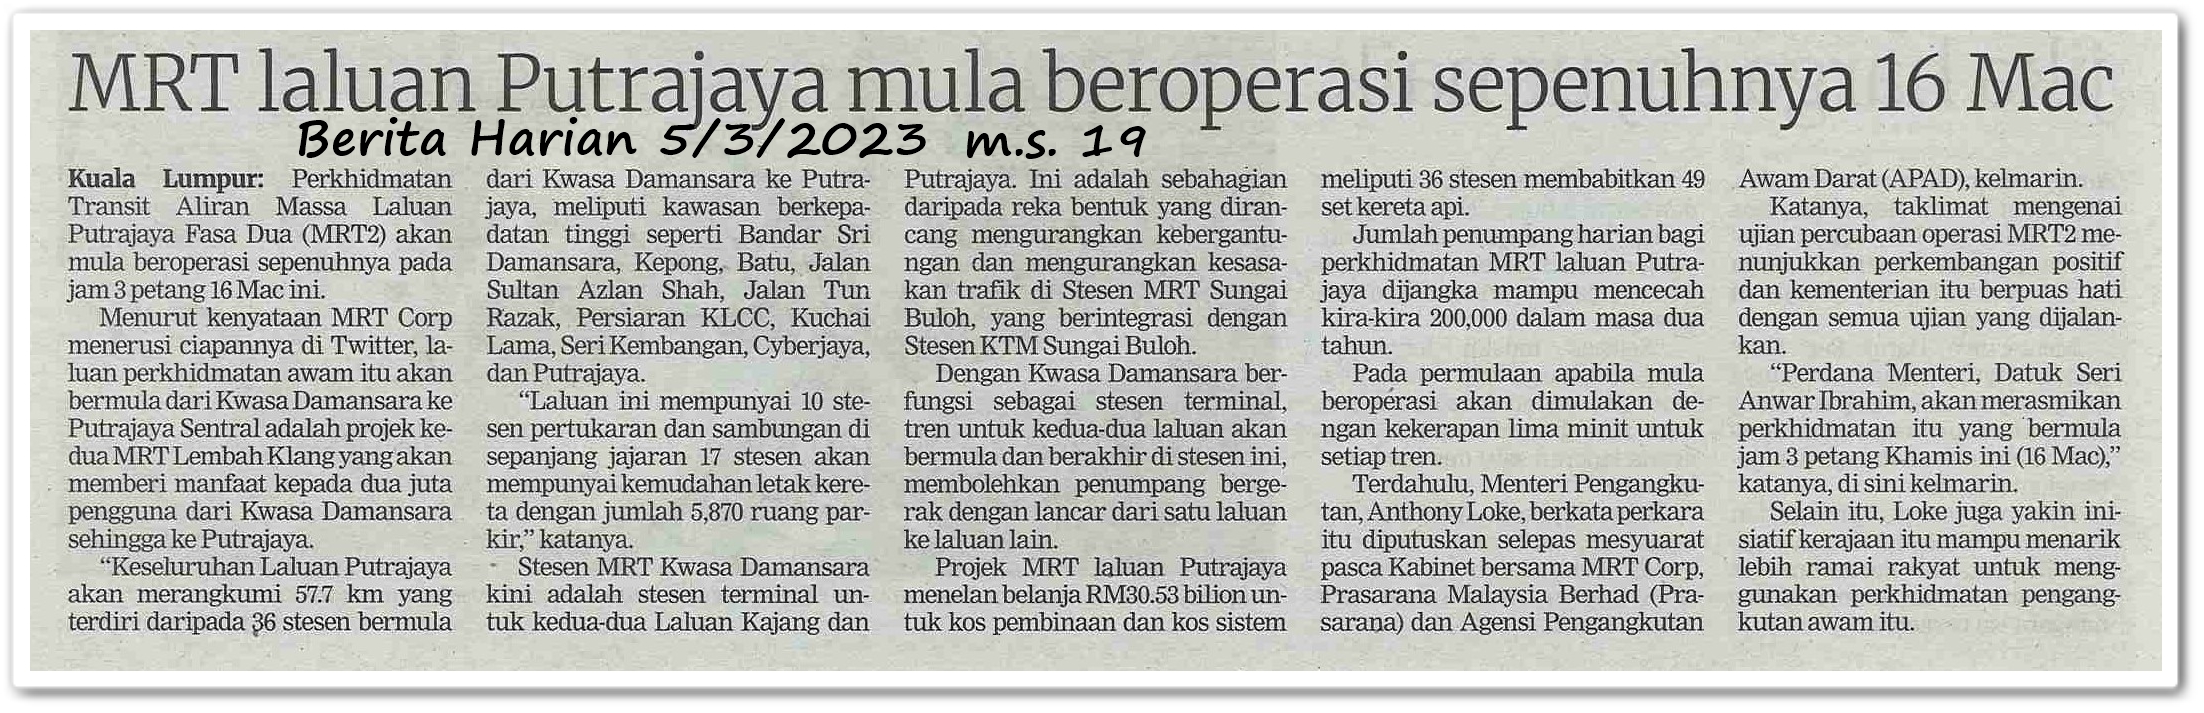 MRT laluan Putrajaya mula beroperasi sepenuhnya 16 Mac - Keratan akhbar Berita Harian 5 Mac 2023